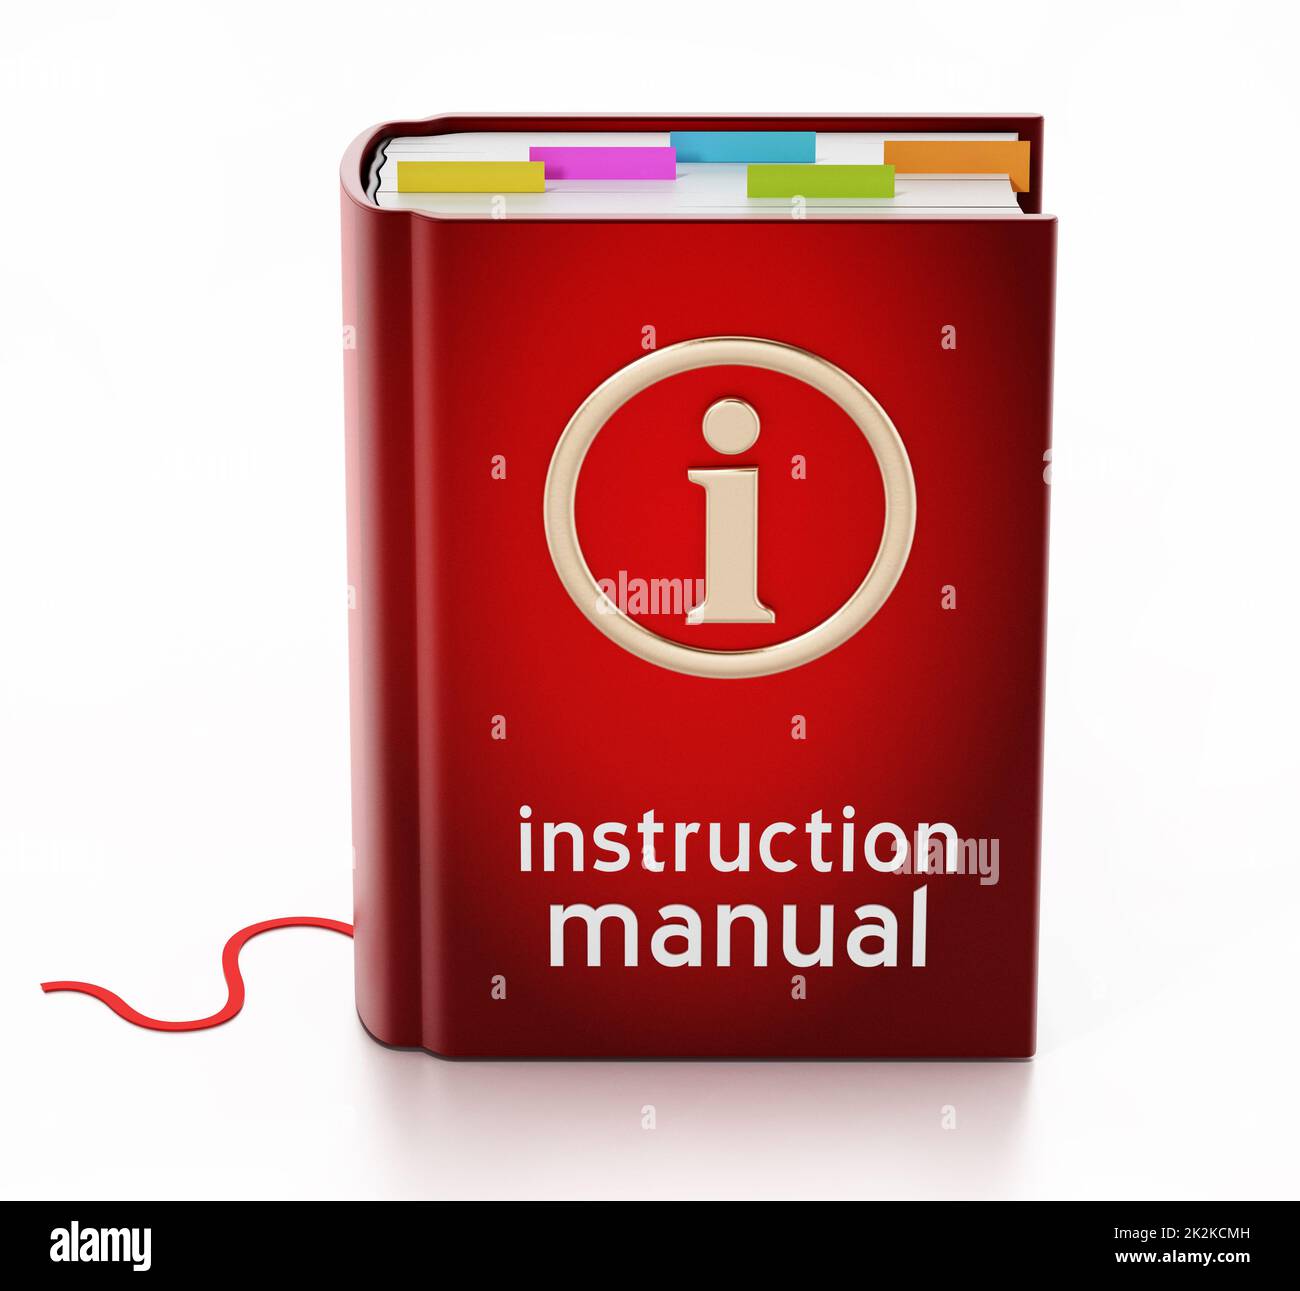 Instruction manual isolated on white background. 3D illustration Stock Photo